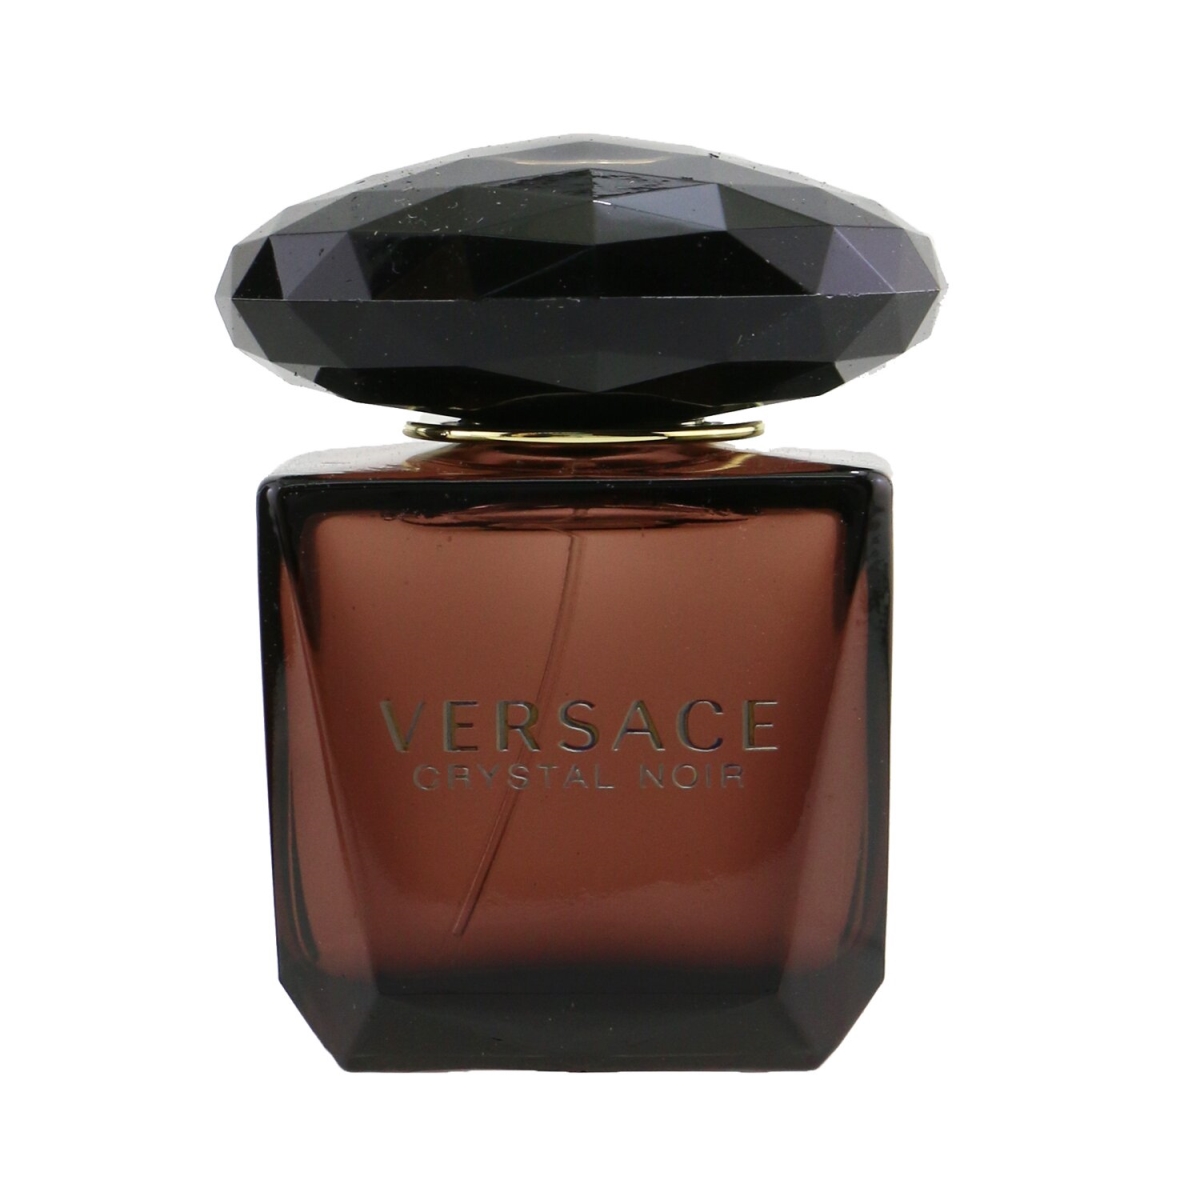 Picture of Versace 56941 1 oz Crystal Noir Eau De Toilette Spray for Women